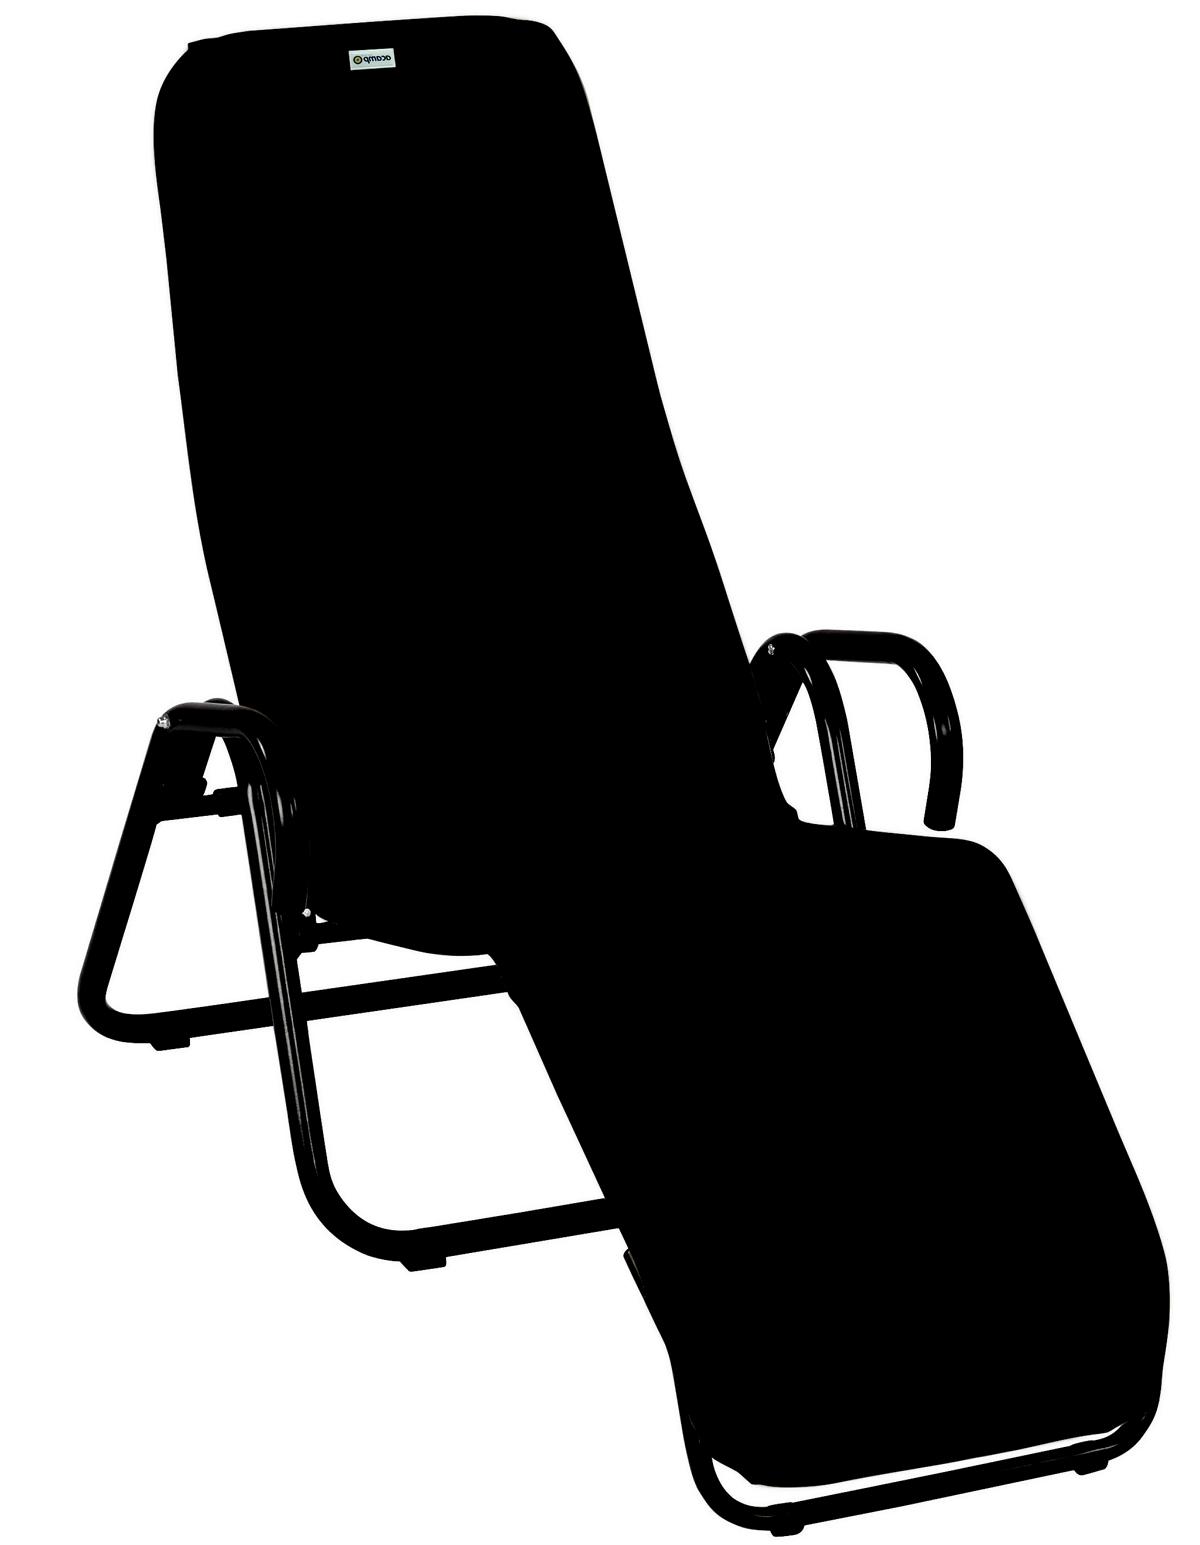 56279 acamp Ersatzbezug zu Calypso Bäderliege, Farbe: nero / atmungsaktives Acatex-Gewebe, Grösse: 190 cm x 54 cm